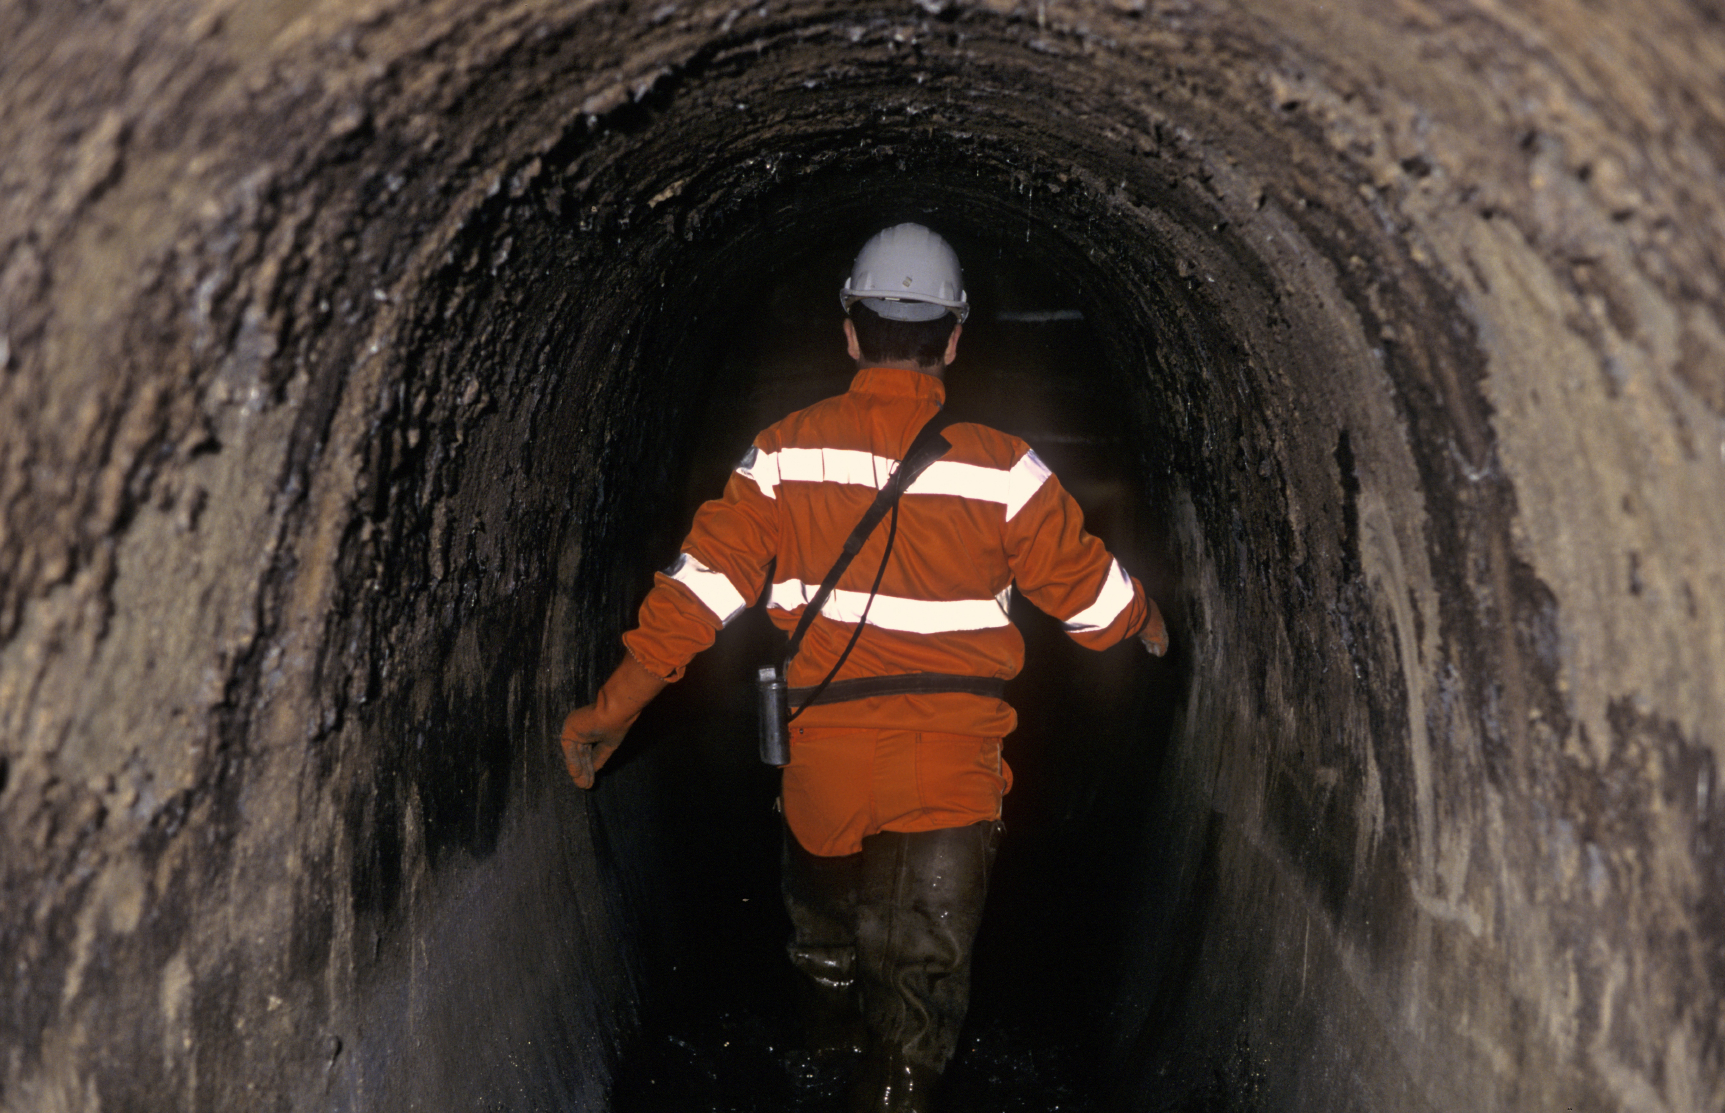 man wearing visor walking in sewer